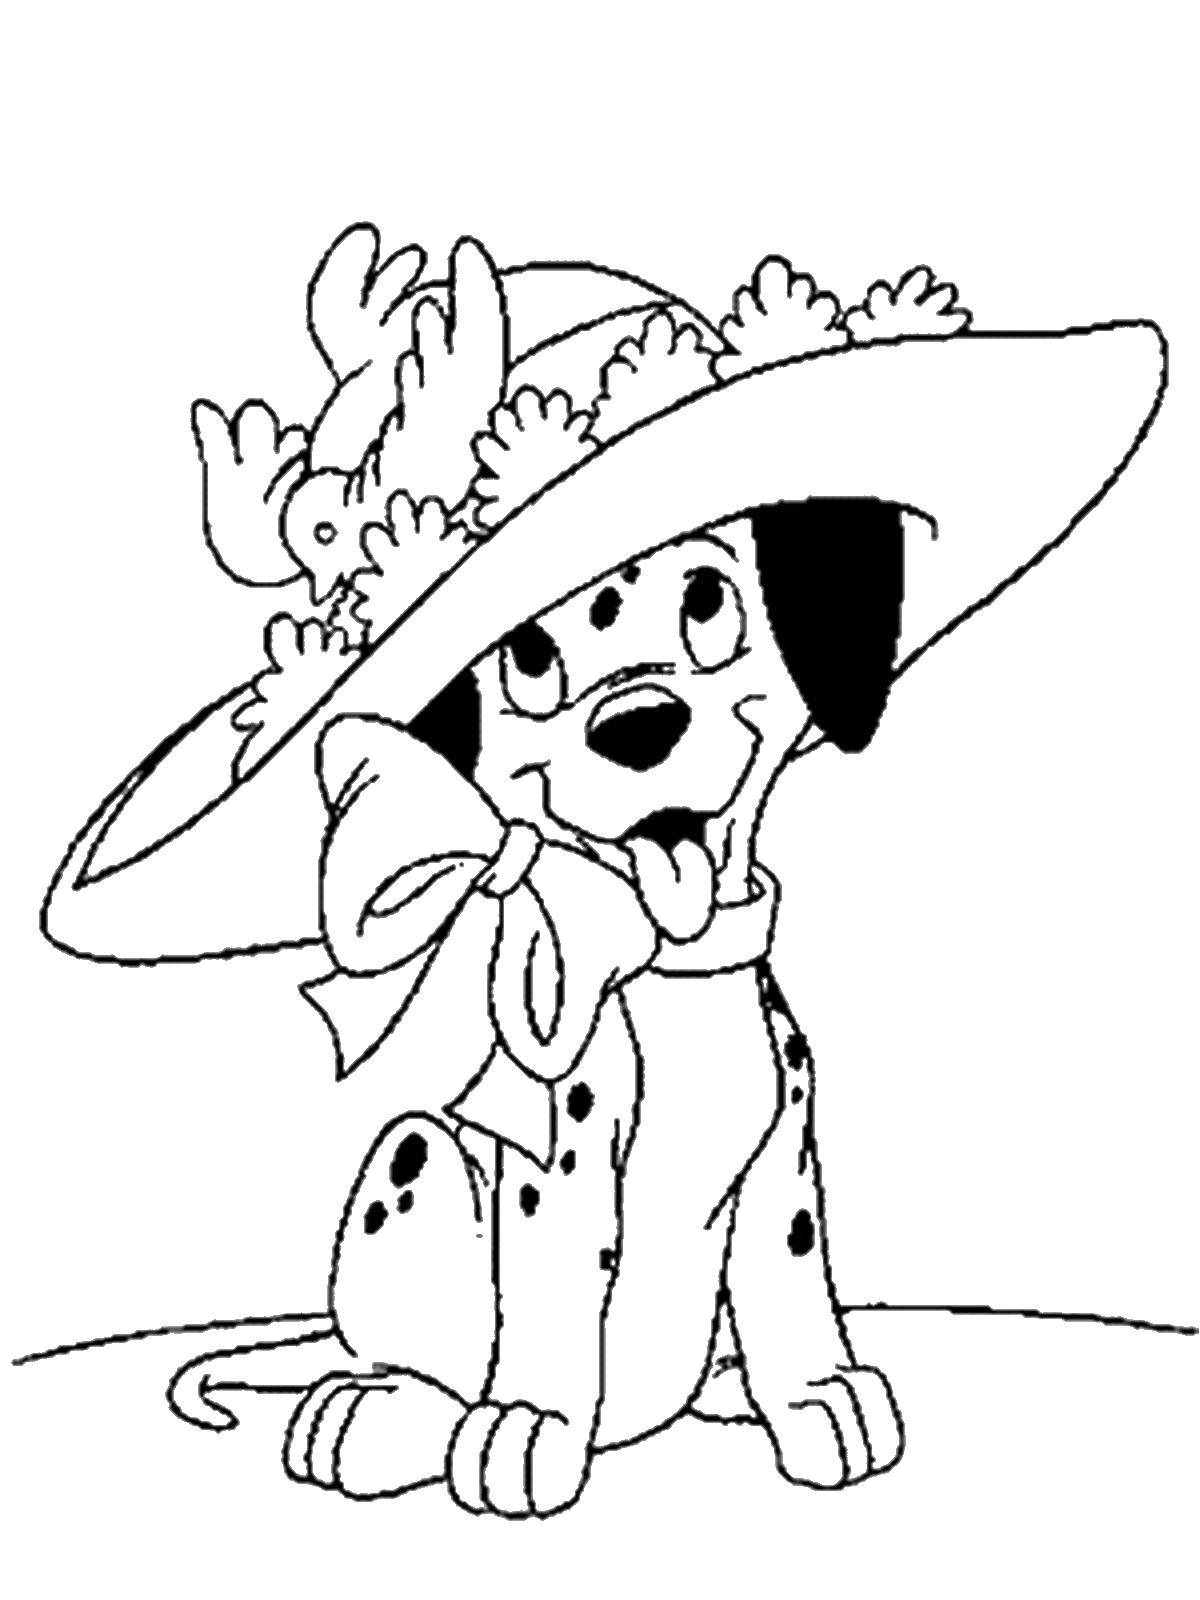 Название: Раскраска Далматинец в шляпке. Категория: 101 далматинец. Теги: 101 далматинец, Дисней, мультфильм.